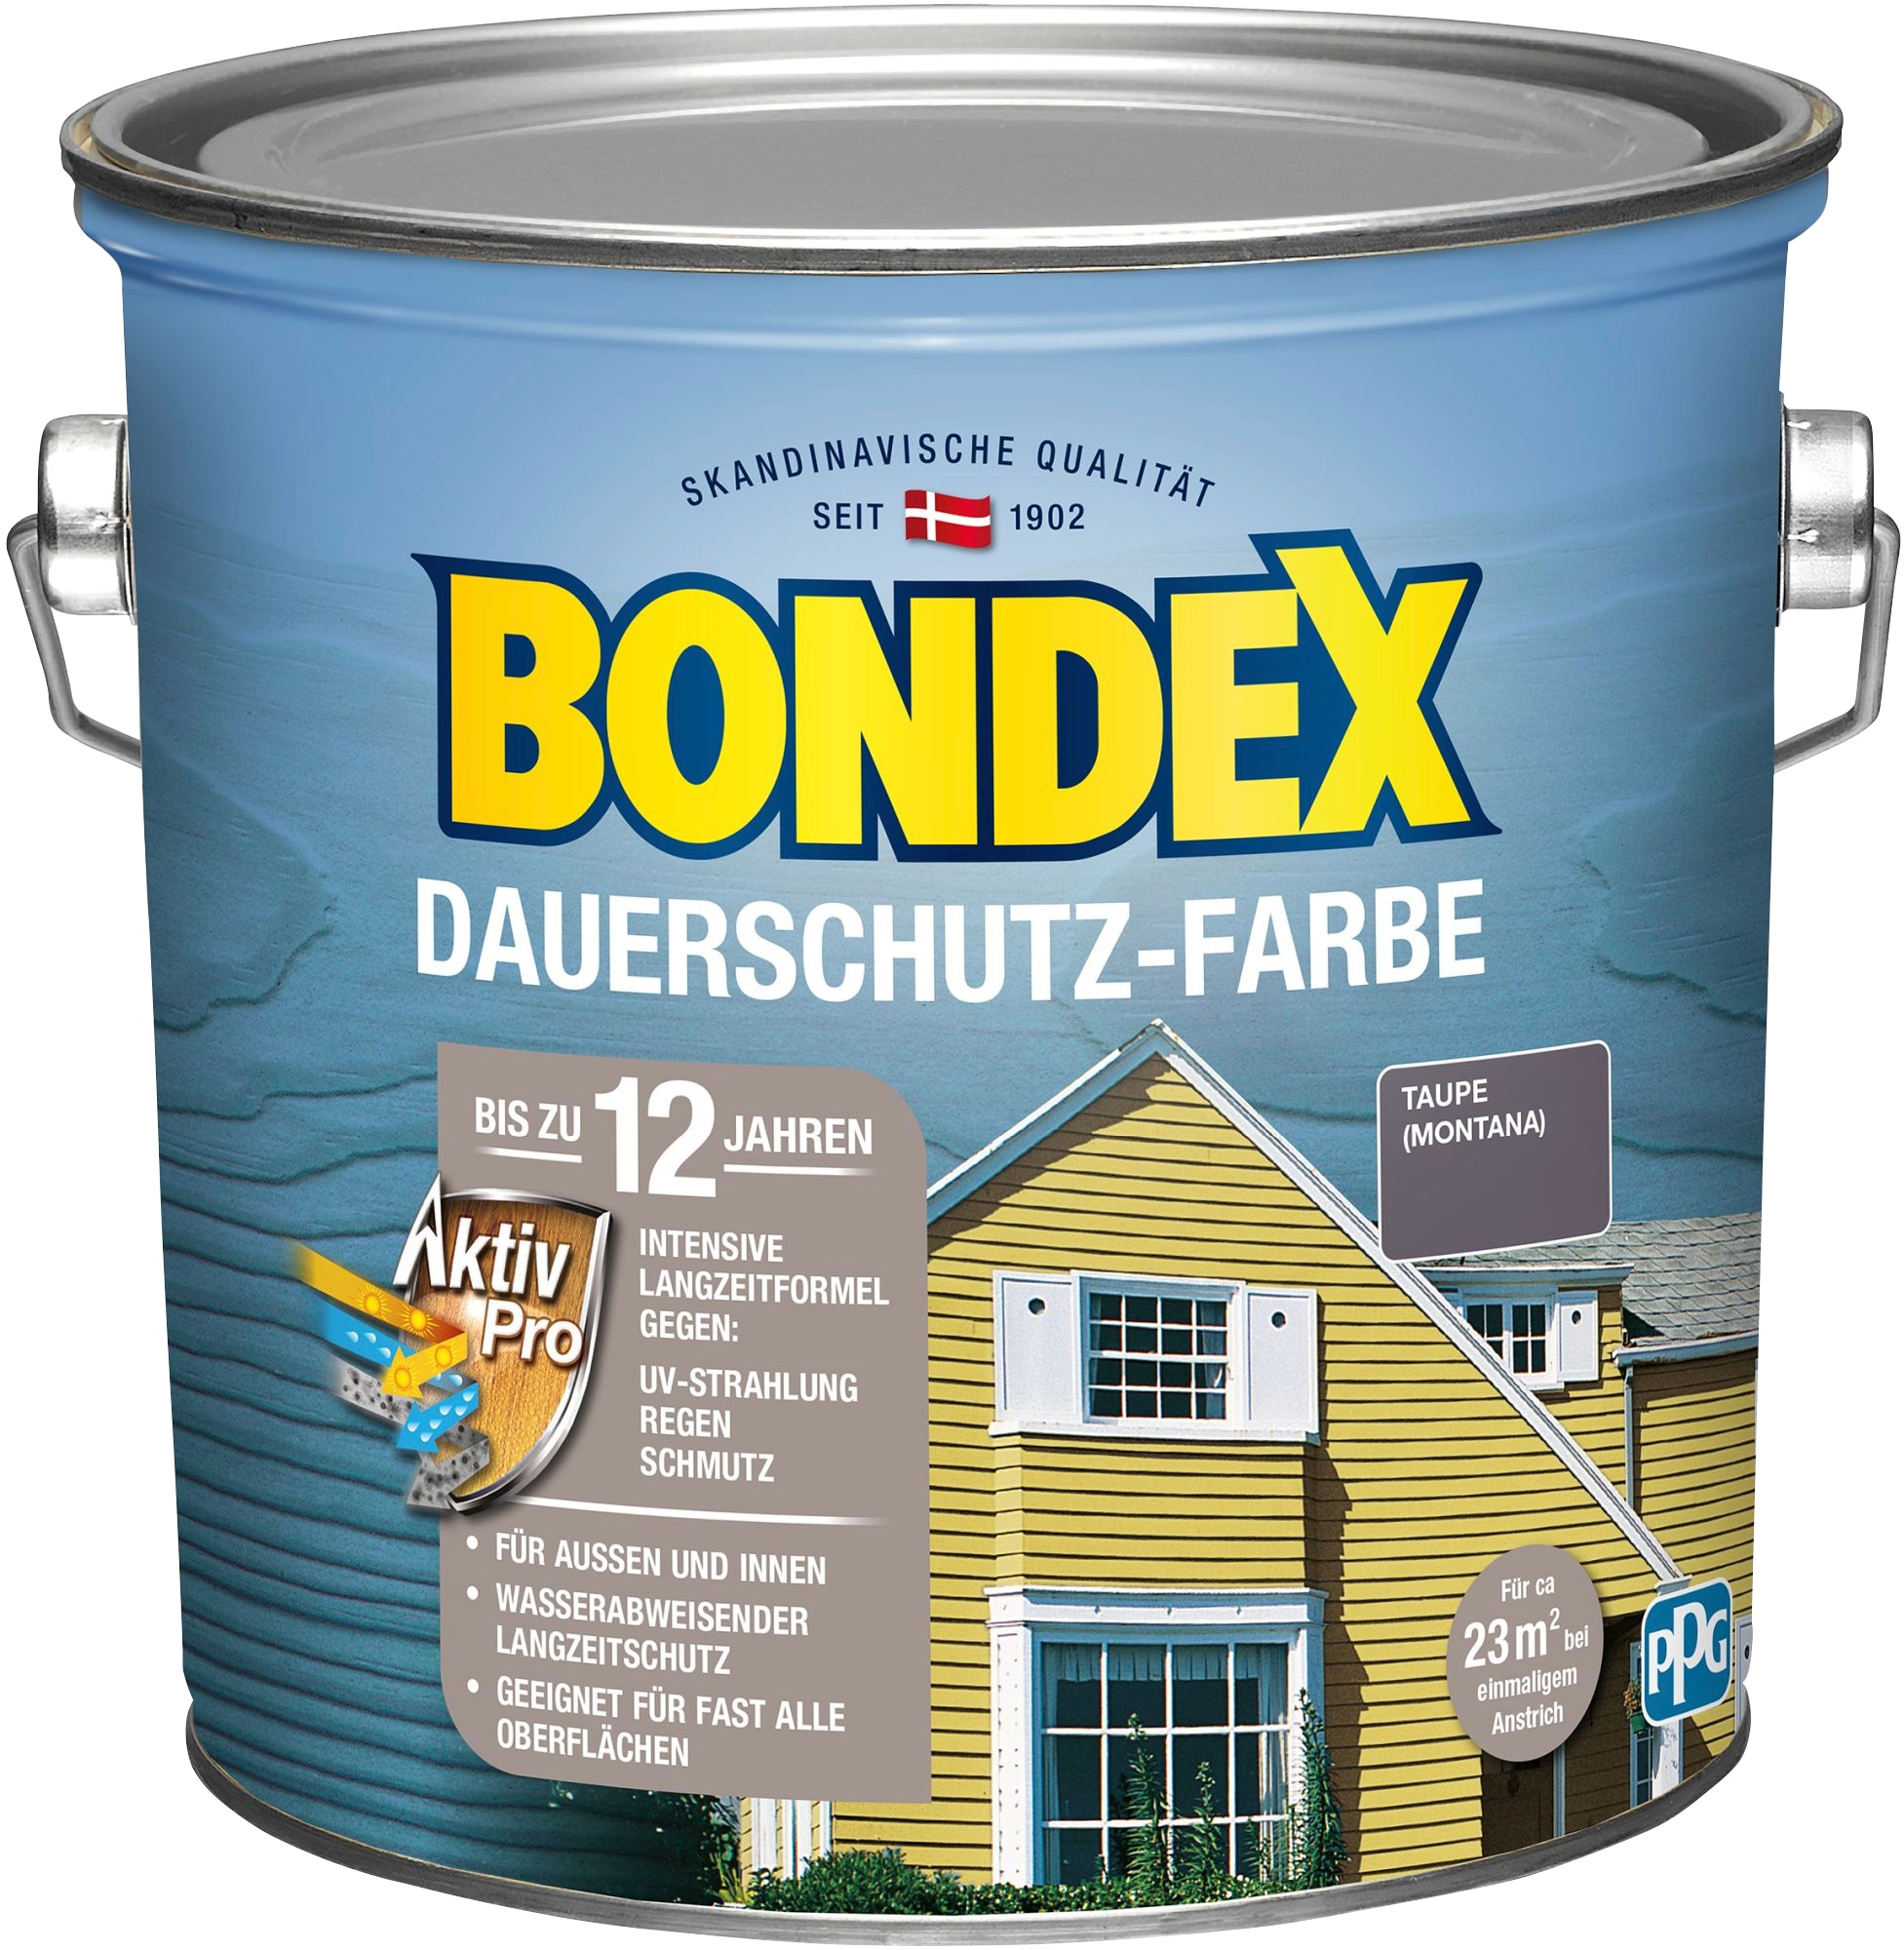 OTTO Wetterschutz mit Innen, bei Aktiv und Pro Wetterschutzfarbe Langzeitformel für Außen Bondex kaufen »DAUERSCHUTZ-FARBE«,